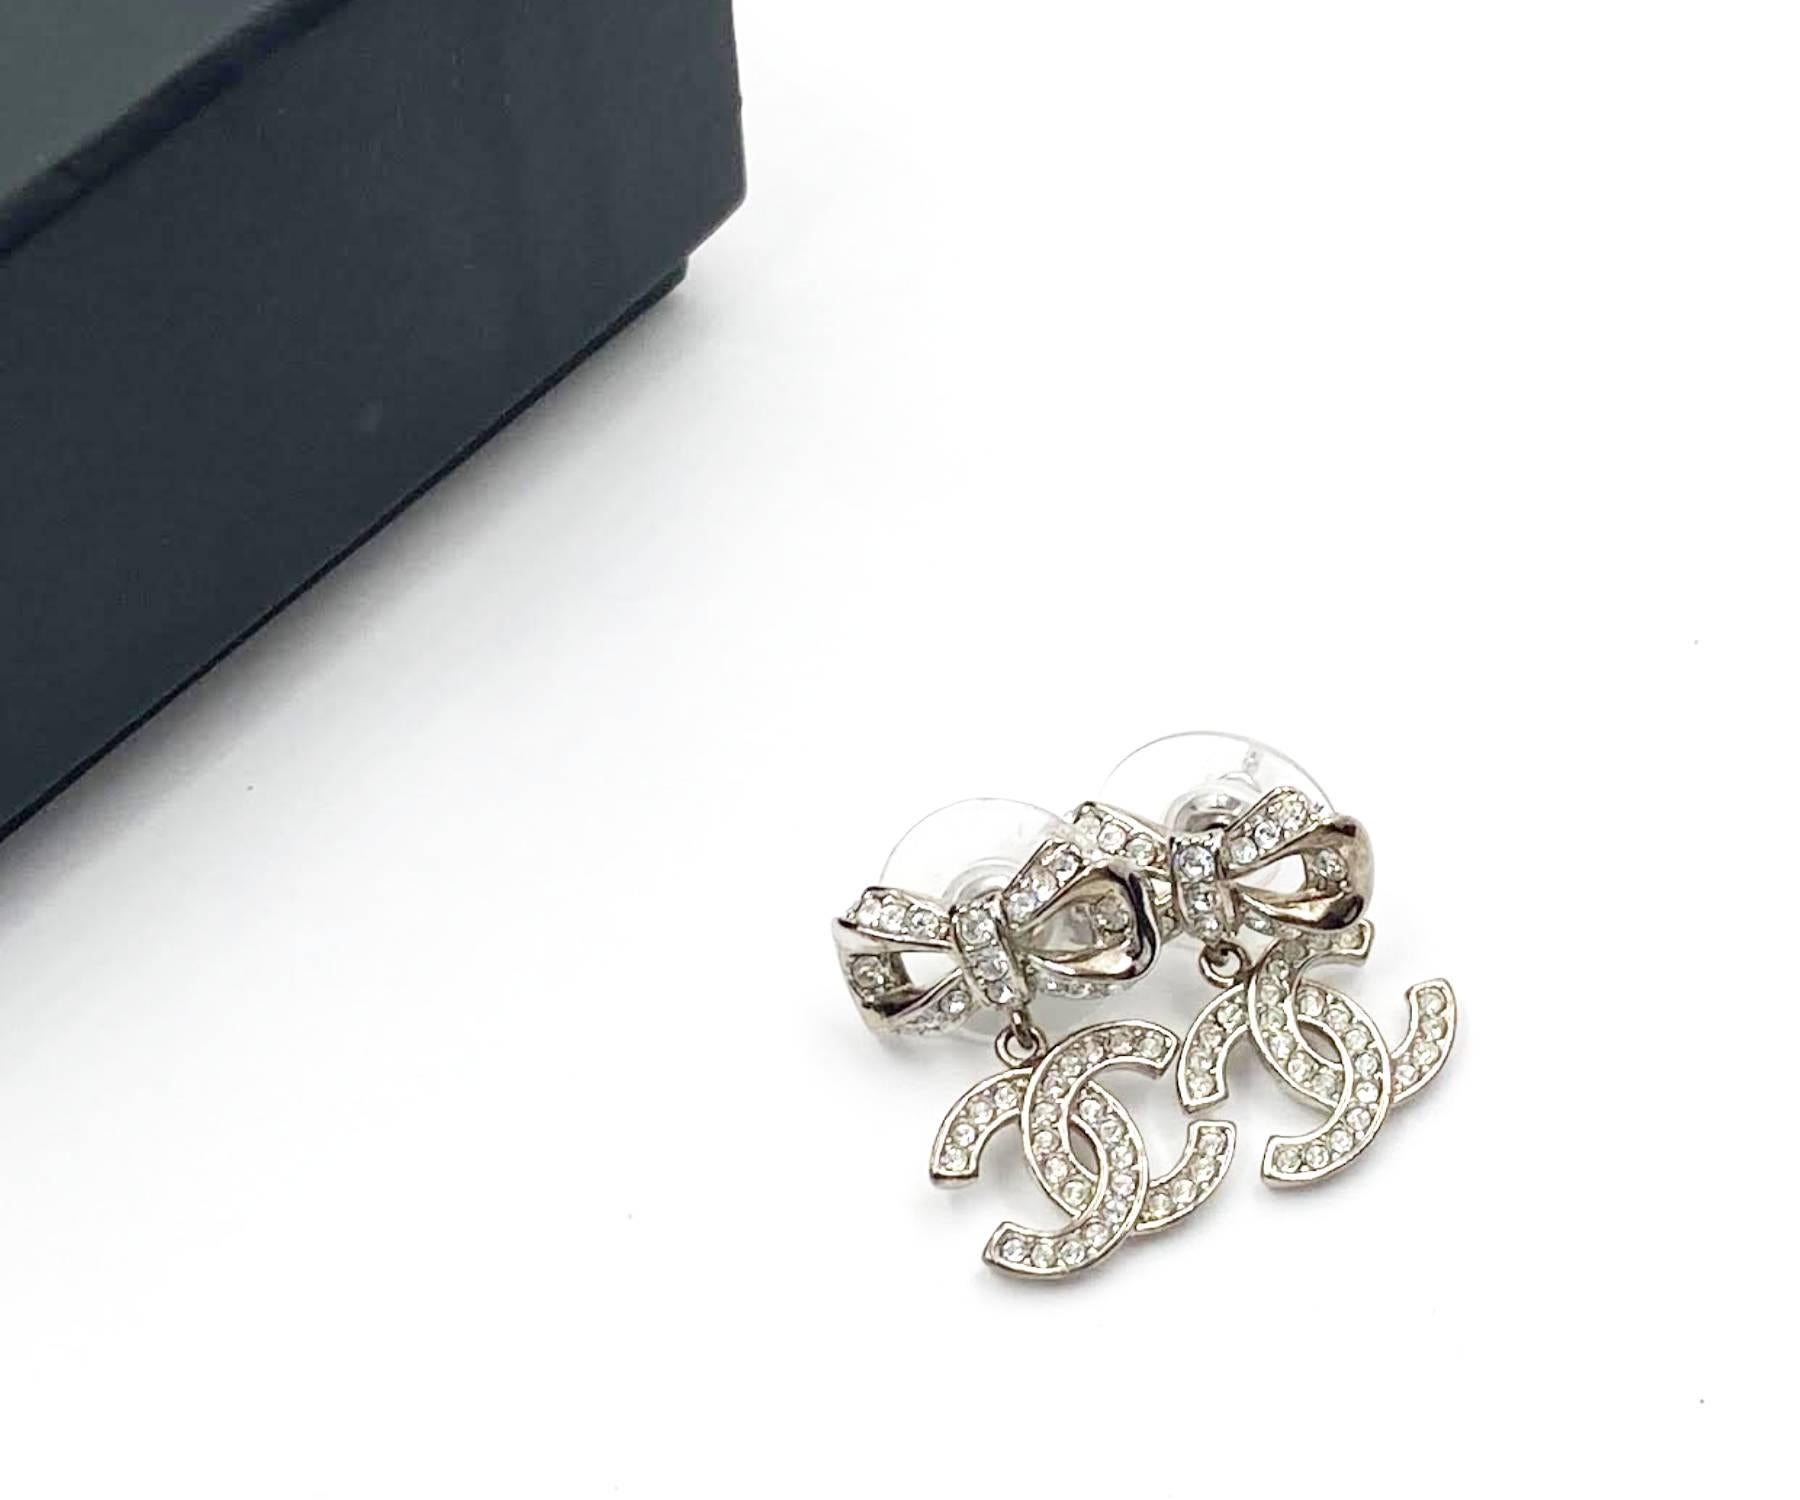 Chanel Silberne Schleife CC baumelnder Kristall-Piercing-Ohrring

*Markiert 18
*Hergestellt in Italien
*Lieferung mit Originalverpackung und -etui

-Ungefähr 0,75